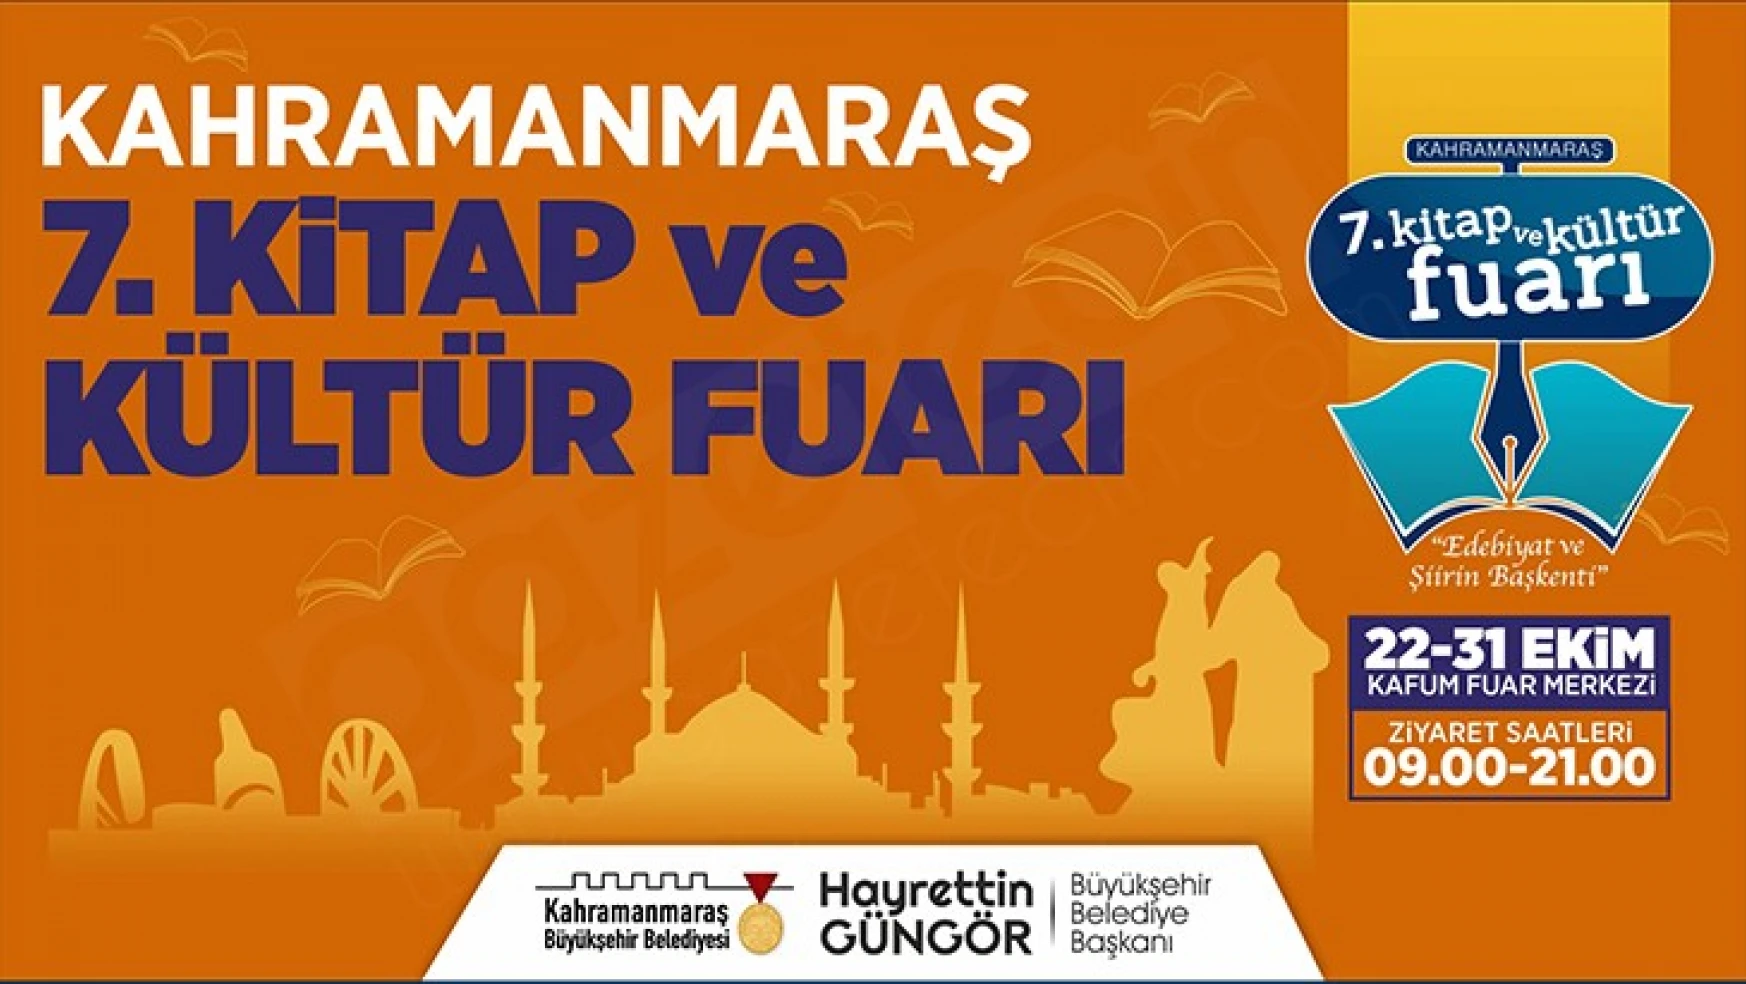 Kahramanmaraş 7'nci Kitap ve Kültür Fuarı 22 Ekim'de başlıyor